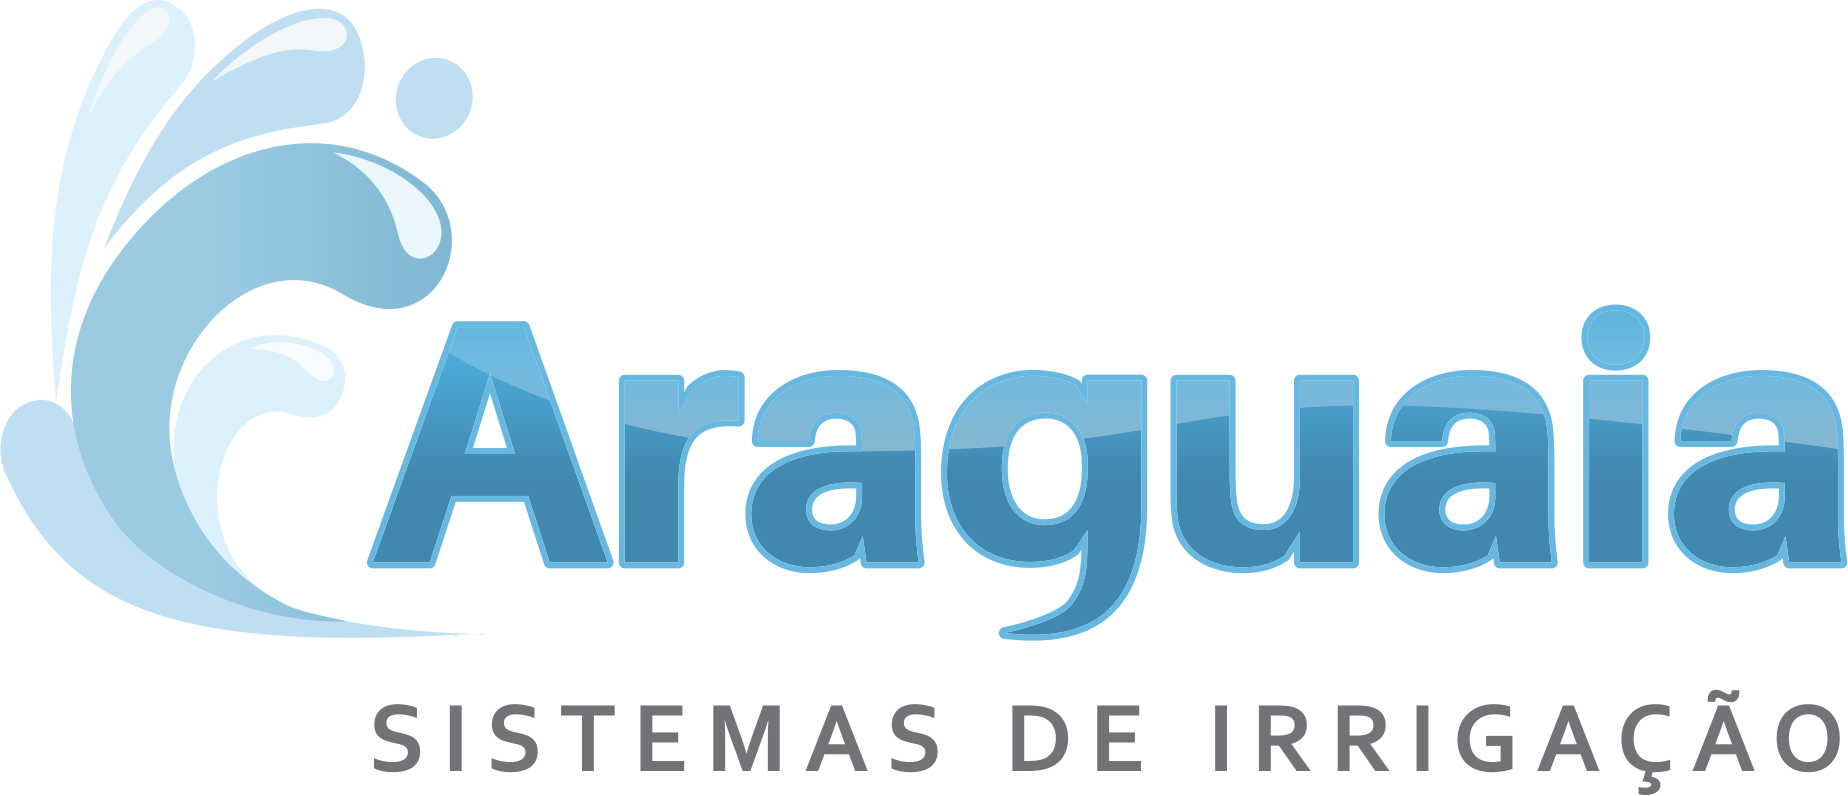 Arquivos Landscape Design | Araguaia